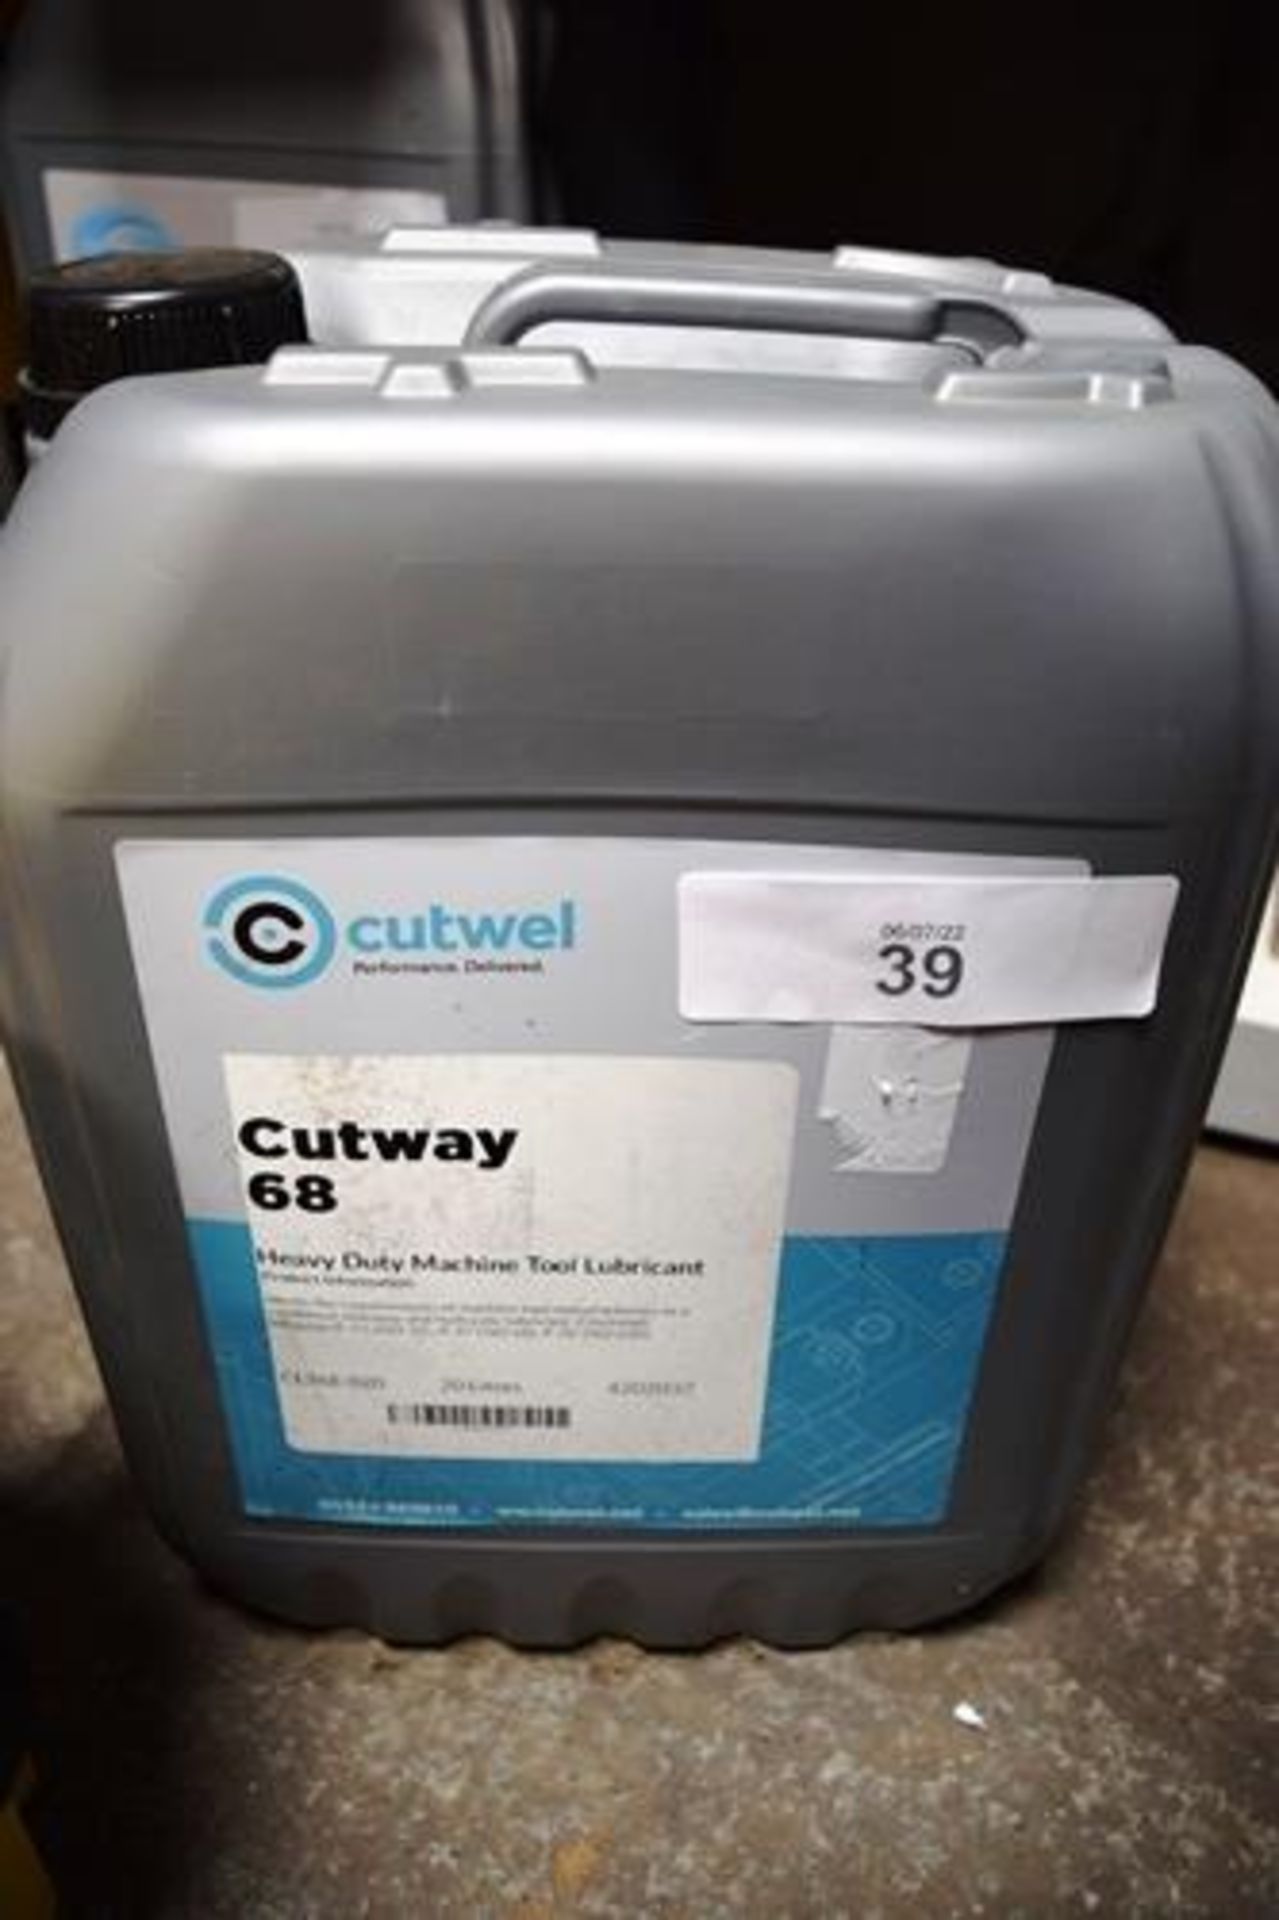 1 x 20ltr tub of Cutwell Cutway 68 heavy duty machine tool lubricant and 1 x 20ltr tub of Cutwell